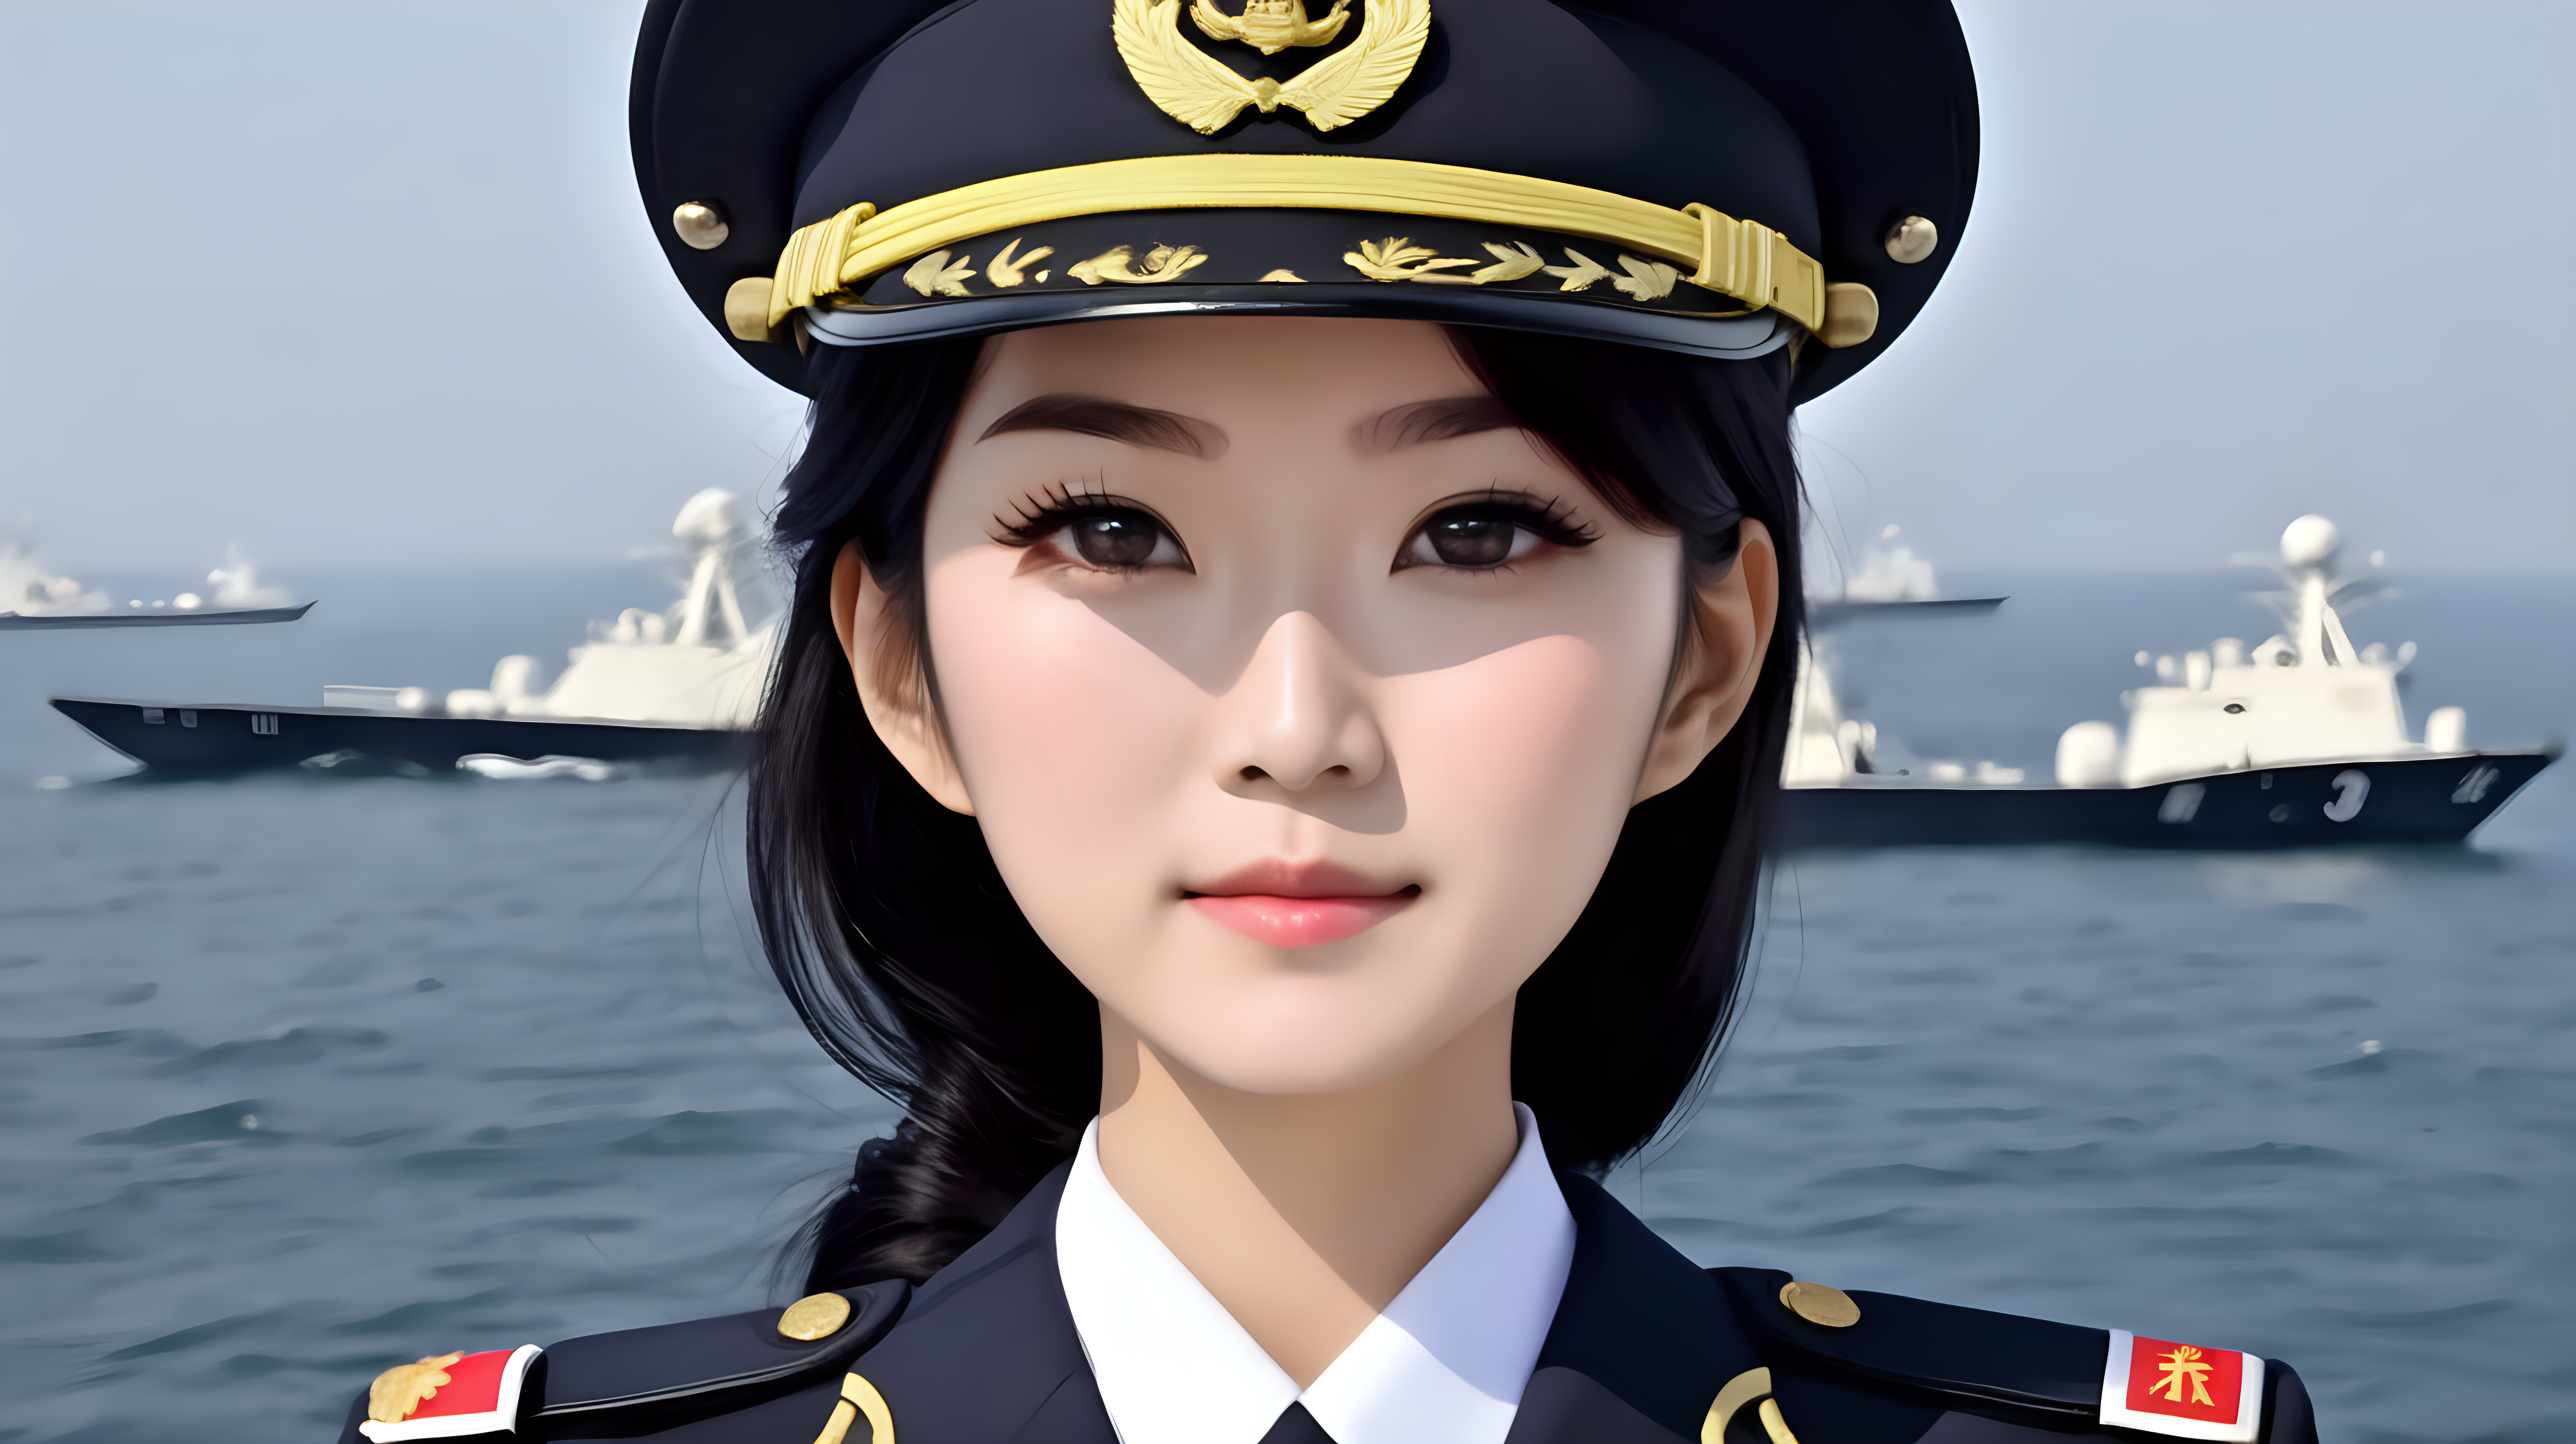 中国海军女兵
黑发
新闻女主播